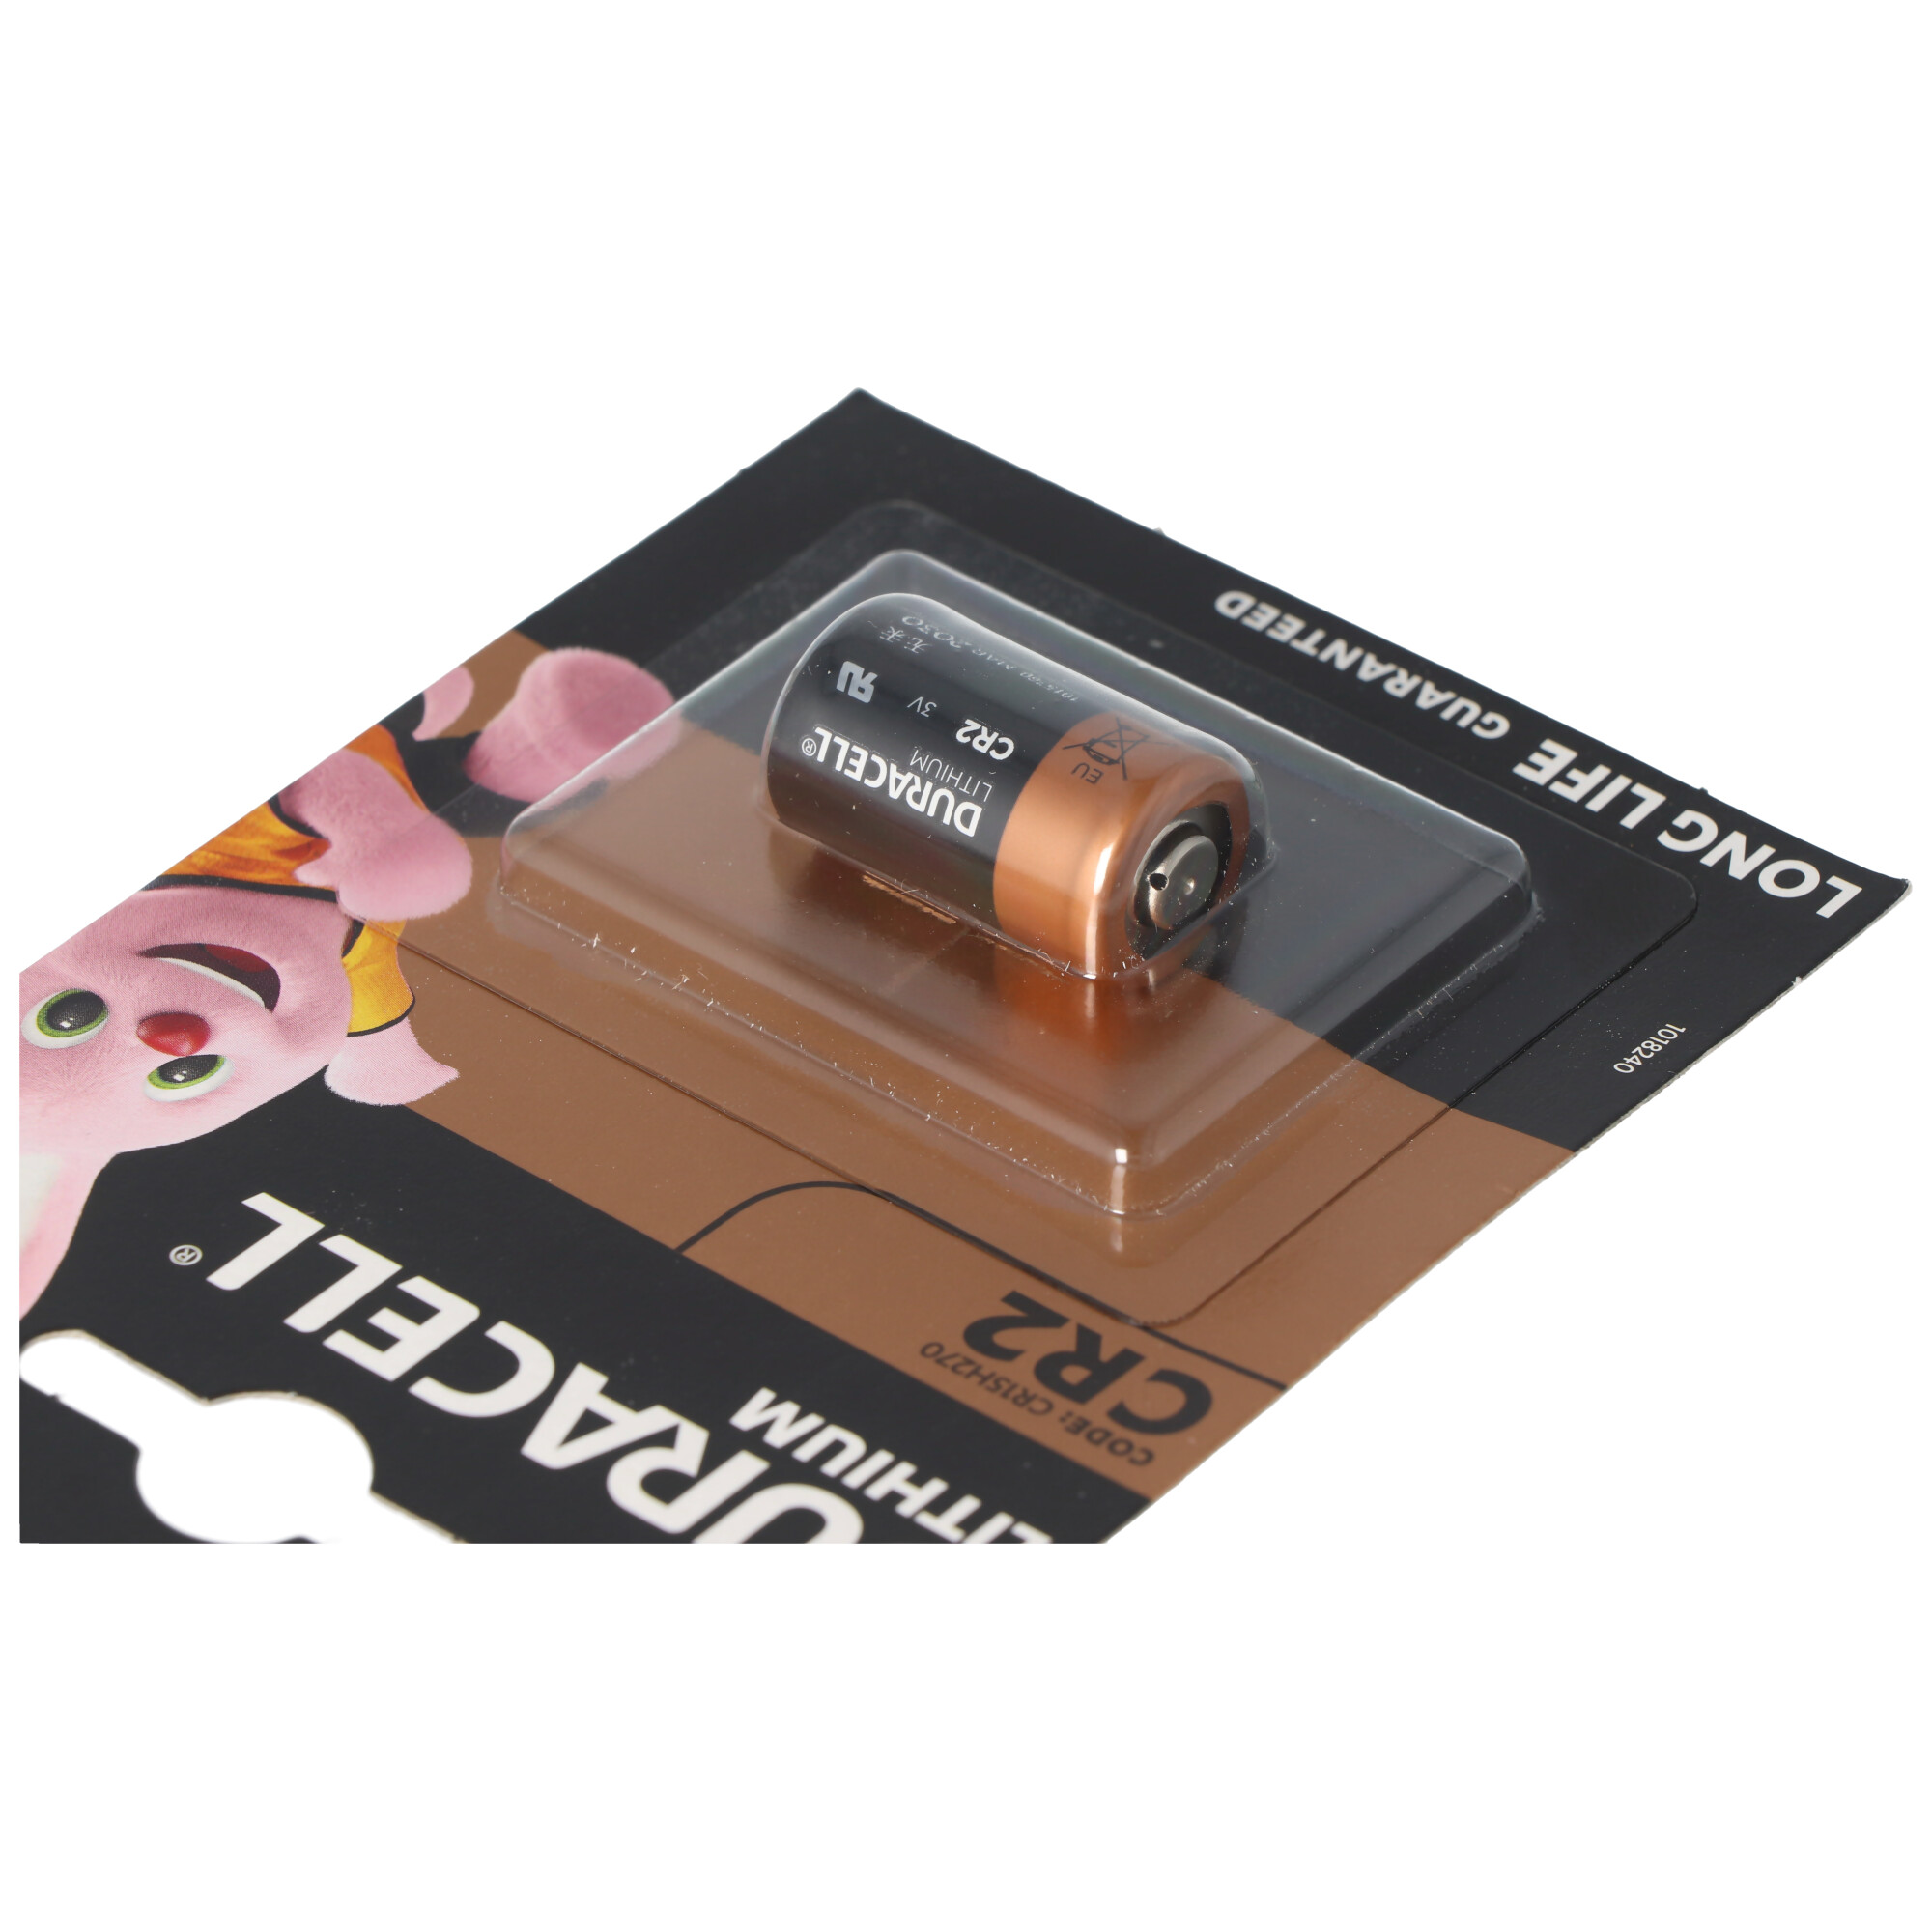 Duracell Photobatterie CR2 Lithium 3Vmax. 850mAh im 1er Blister, CR15H270